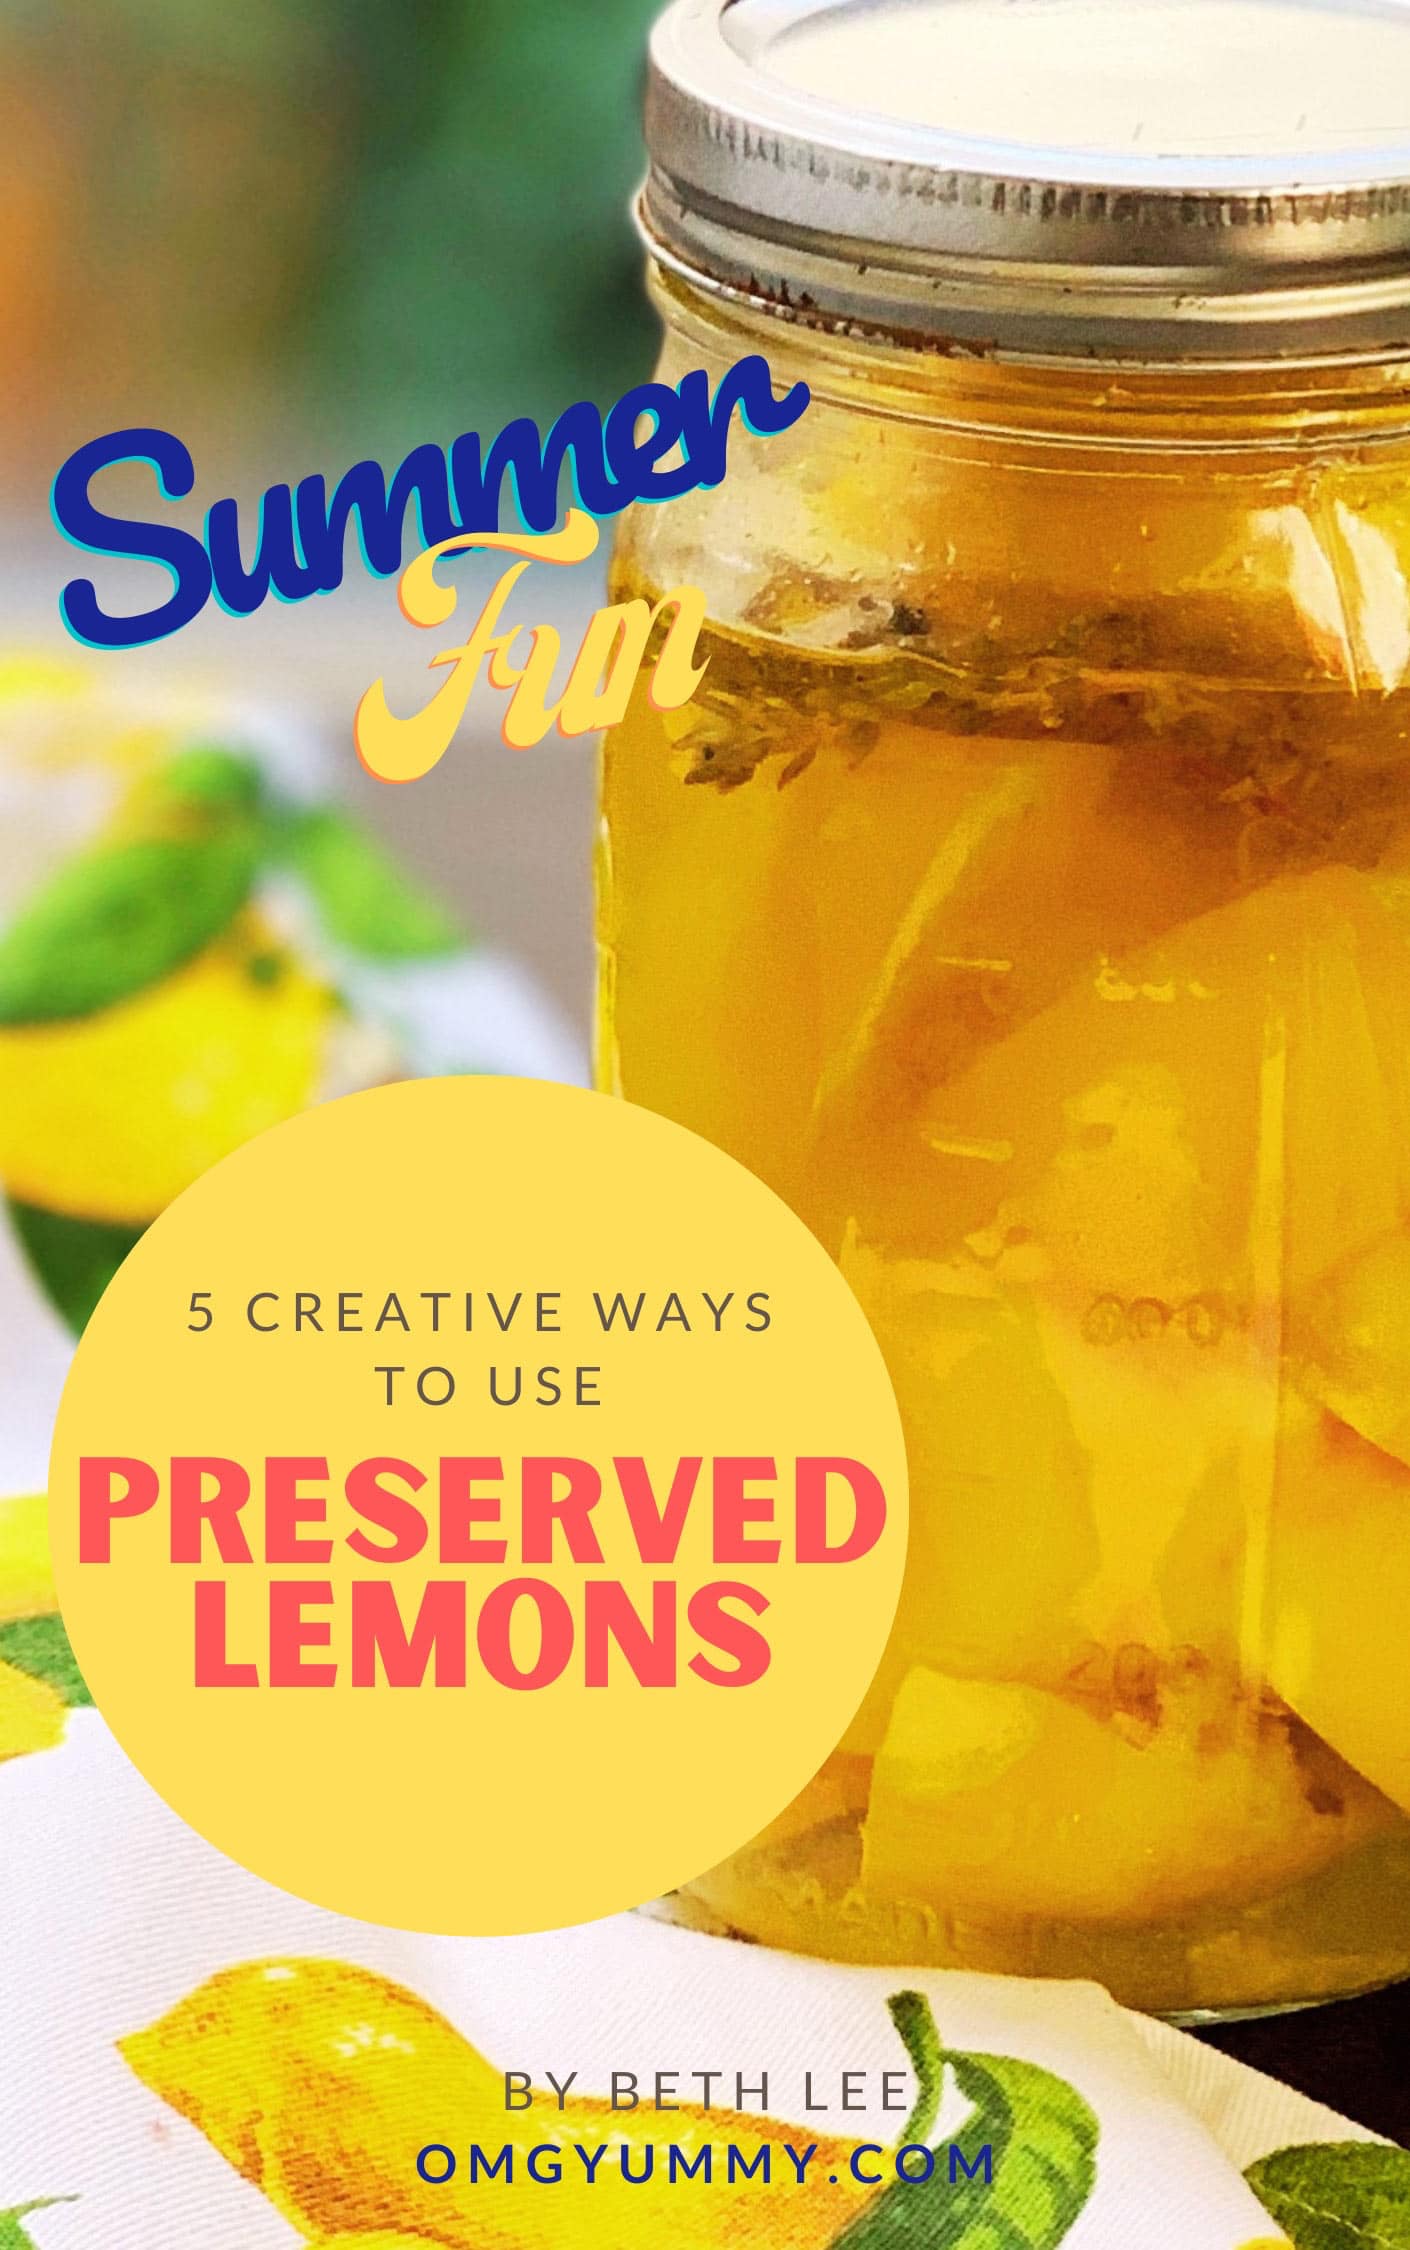 Cover image for preserved lemon ebook showing a jar of lemons on a lemon napkin.